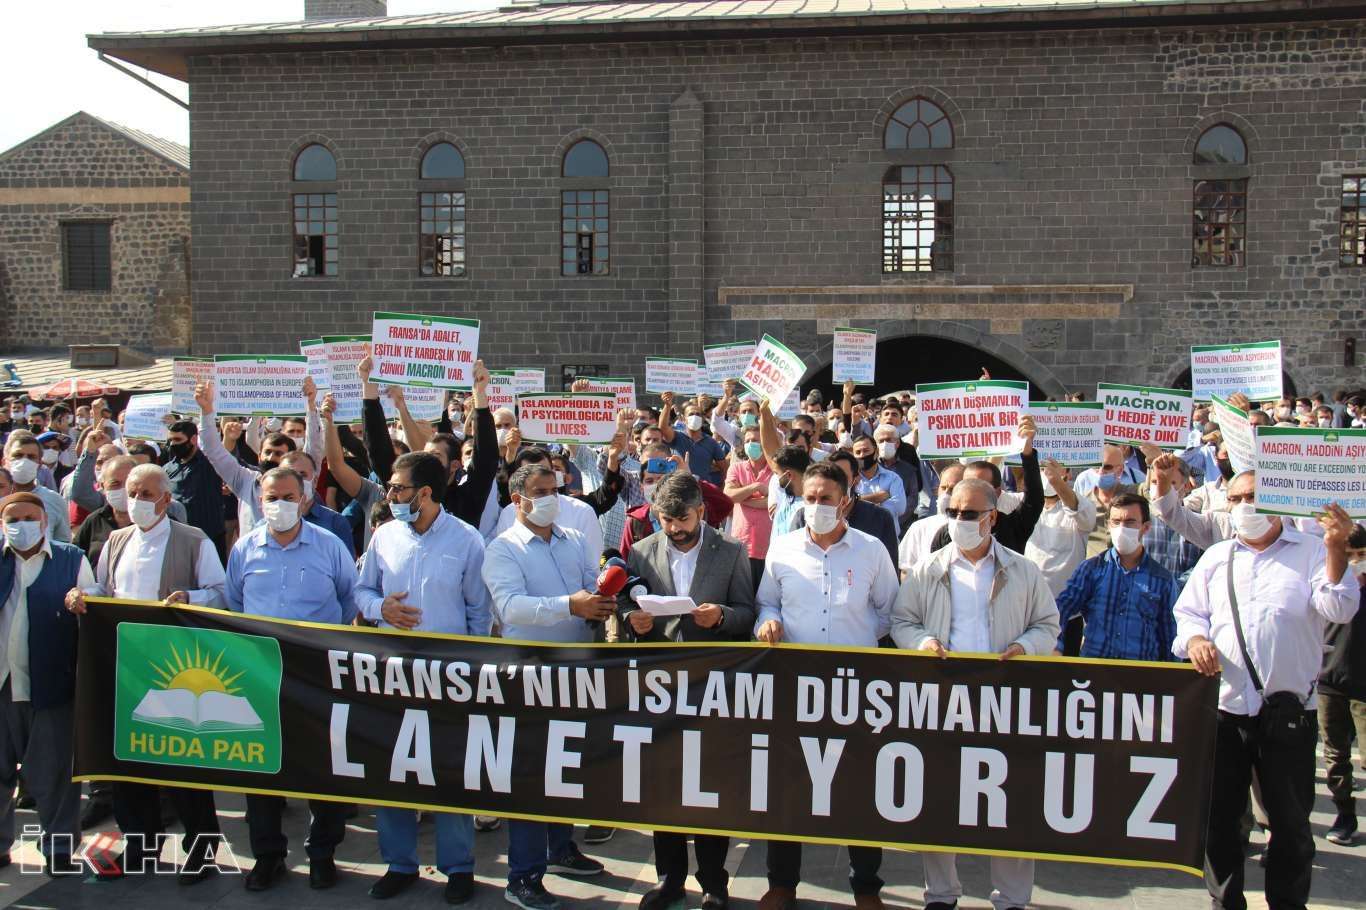 شعب تركيا يدين تصريحات ماكرون والممارسات المعادية للإسلام والمسلمين في الدول الأوروبية